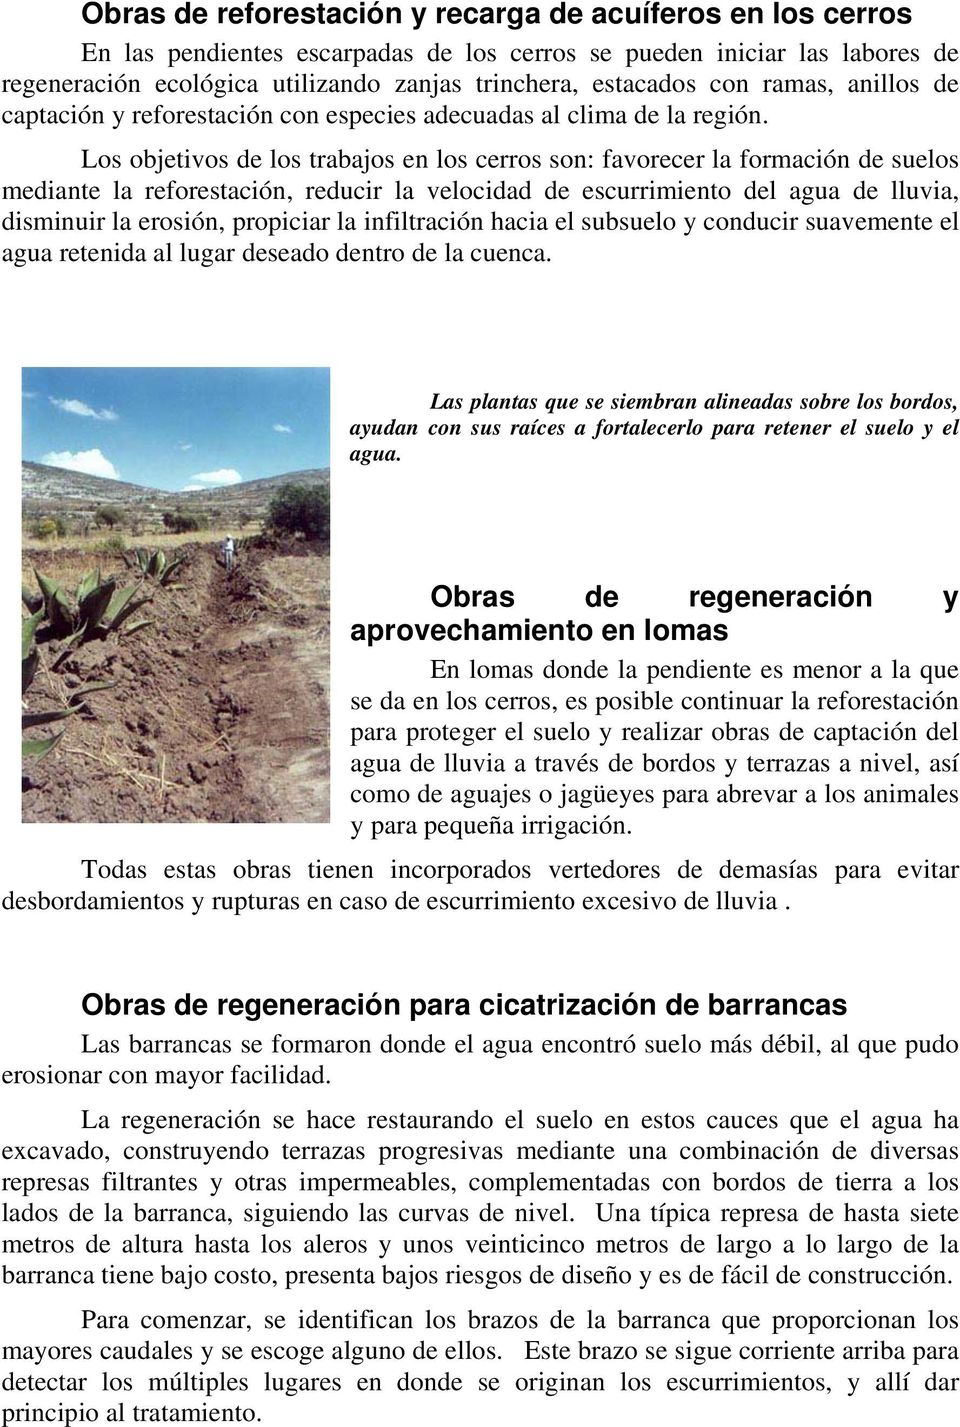 Los objetivos de los trabajos en los cerros son: favorecer la formación de suelos mediante la reforestación, reducir la velocidad de escurrimiento del agua de lluvia, disminuir la erosión, propiciar